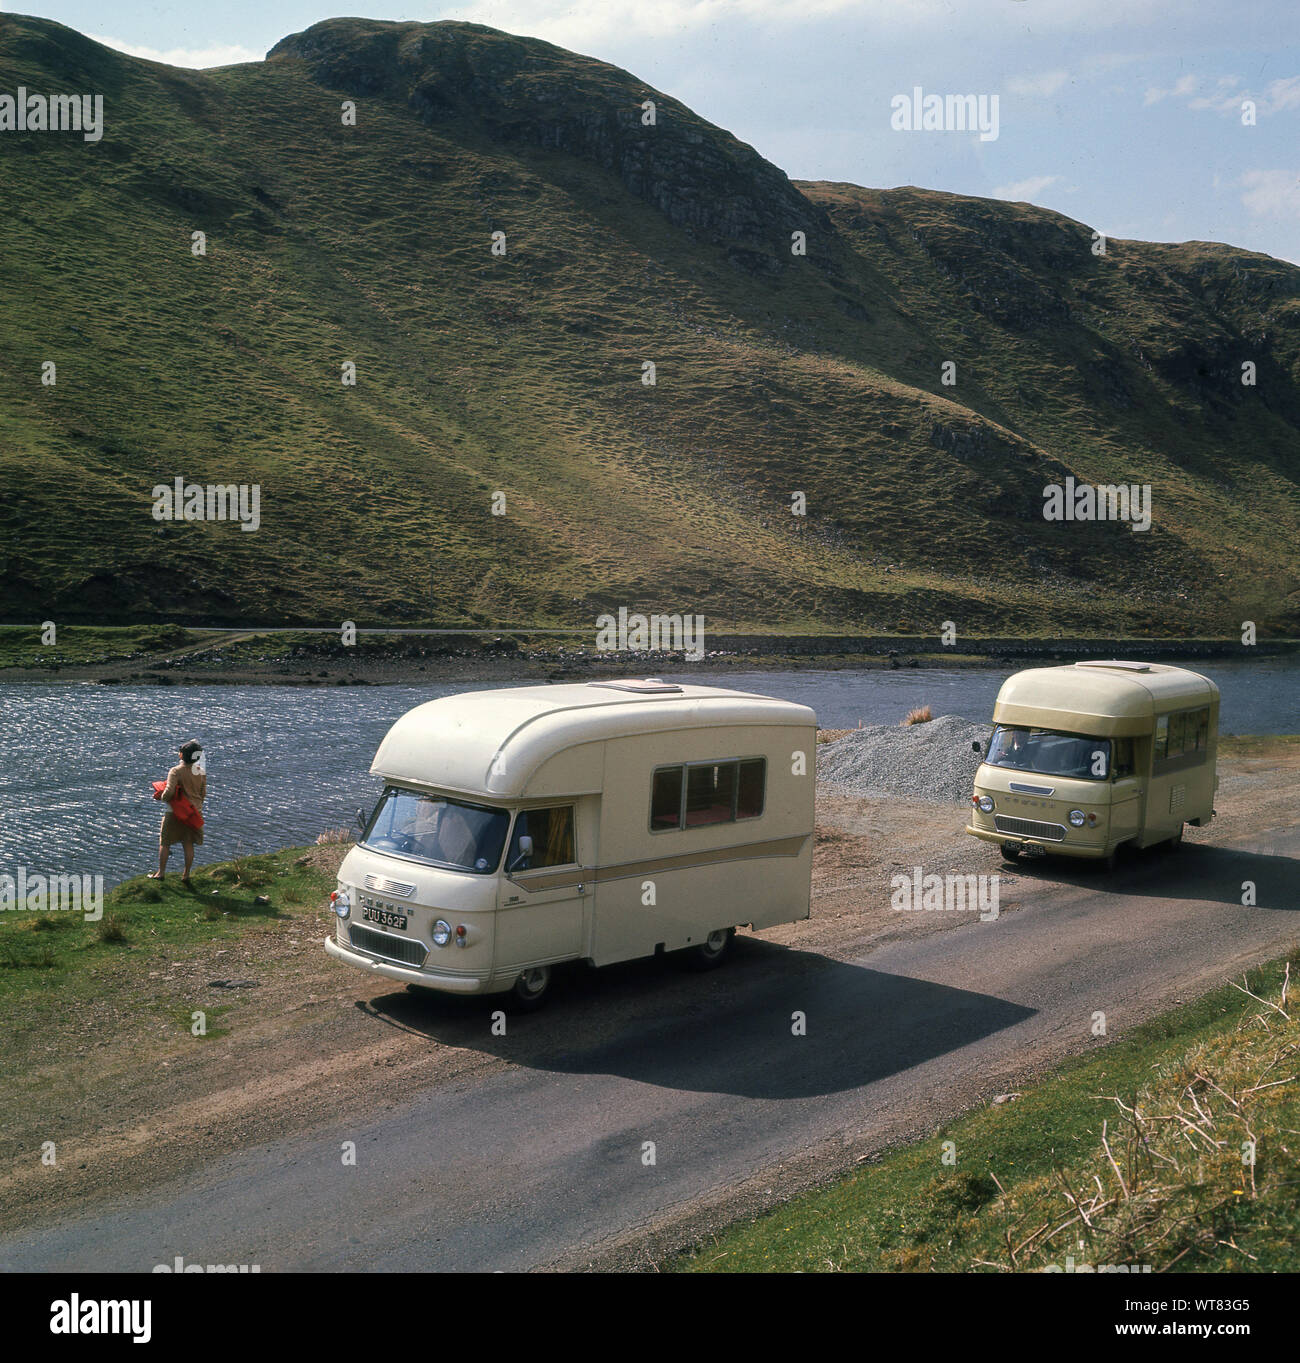 1970, storico, touring highlands scozzesi a Bracadale, Isola di Skye in Scozia. Illustrato nella foto sono due luce gialla Commer camper, un Commer PB "jennings' 2500 roadranger e altro piccolo Commer camper, eventualmente un Commer Highwayman. Foto Stock